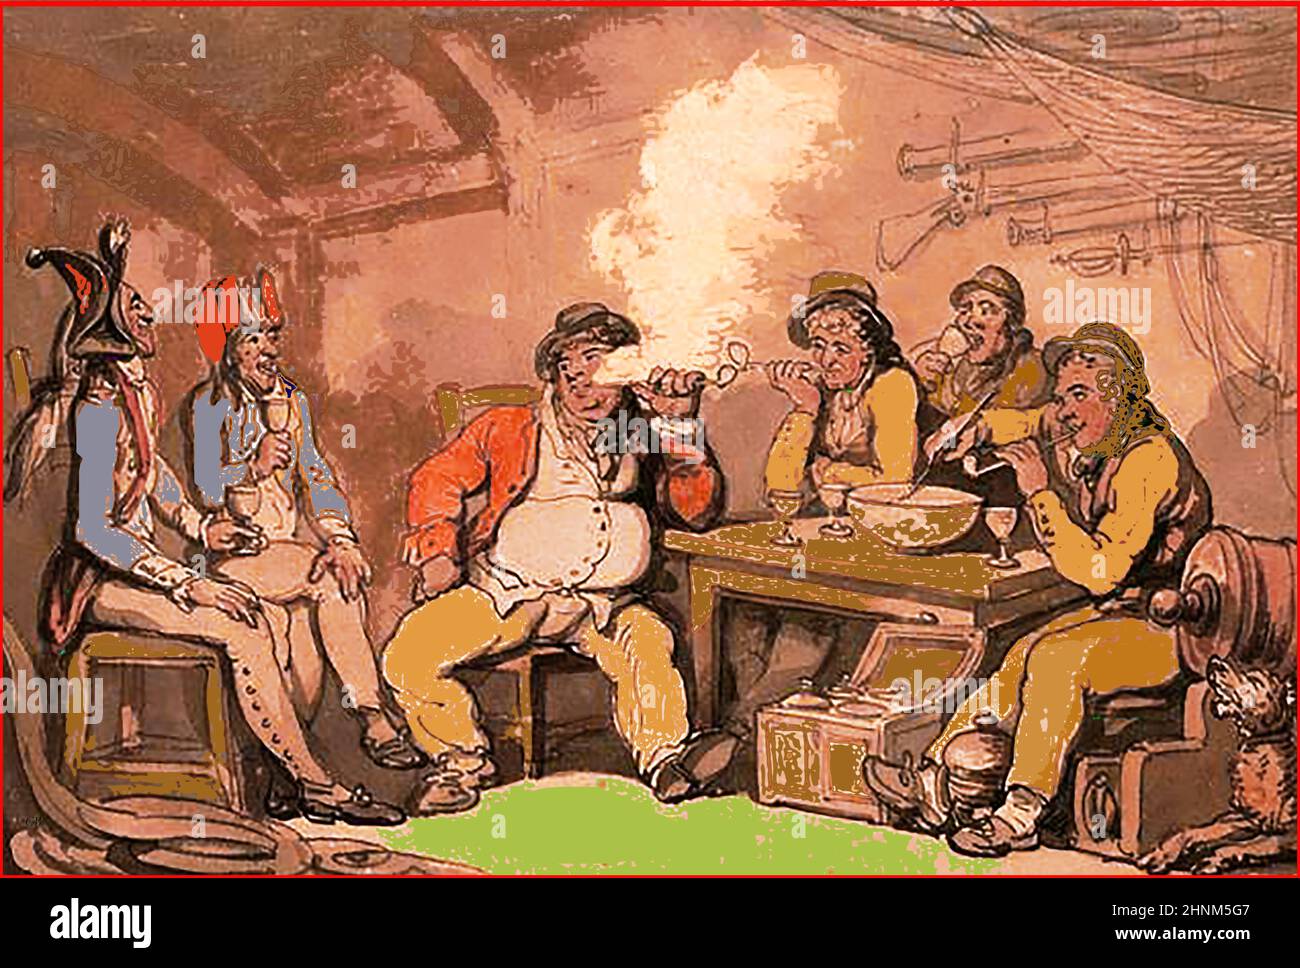 Farbige Illustration aus dem 18th. Jahrhundert mit französischen Gefangenen an Bord eines Briten (Kaufmann?) Schiff wird gut behandelt, wahrscheinlich zu Propagandazwecken Stockfoto